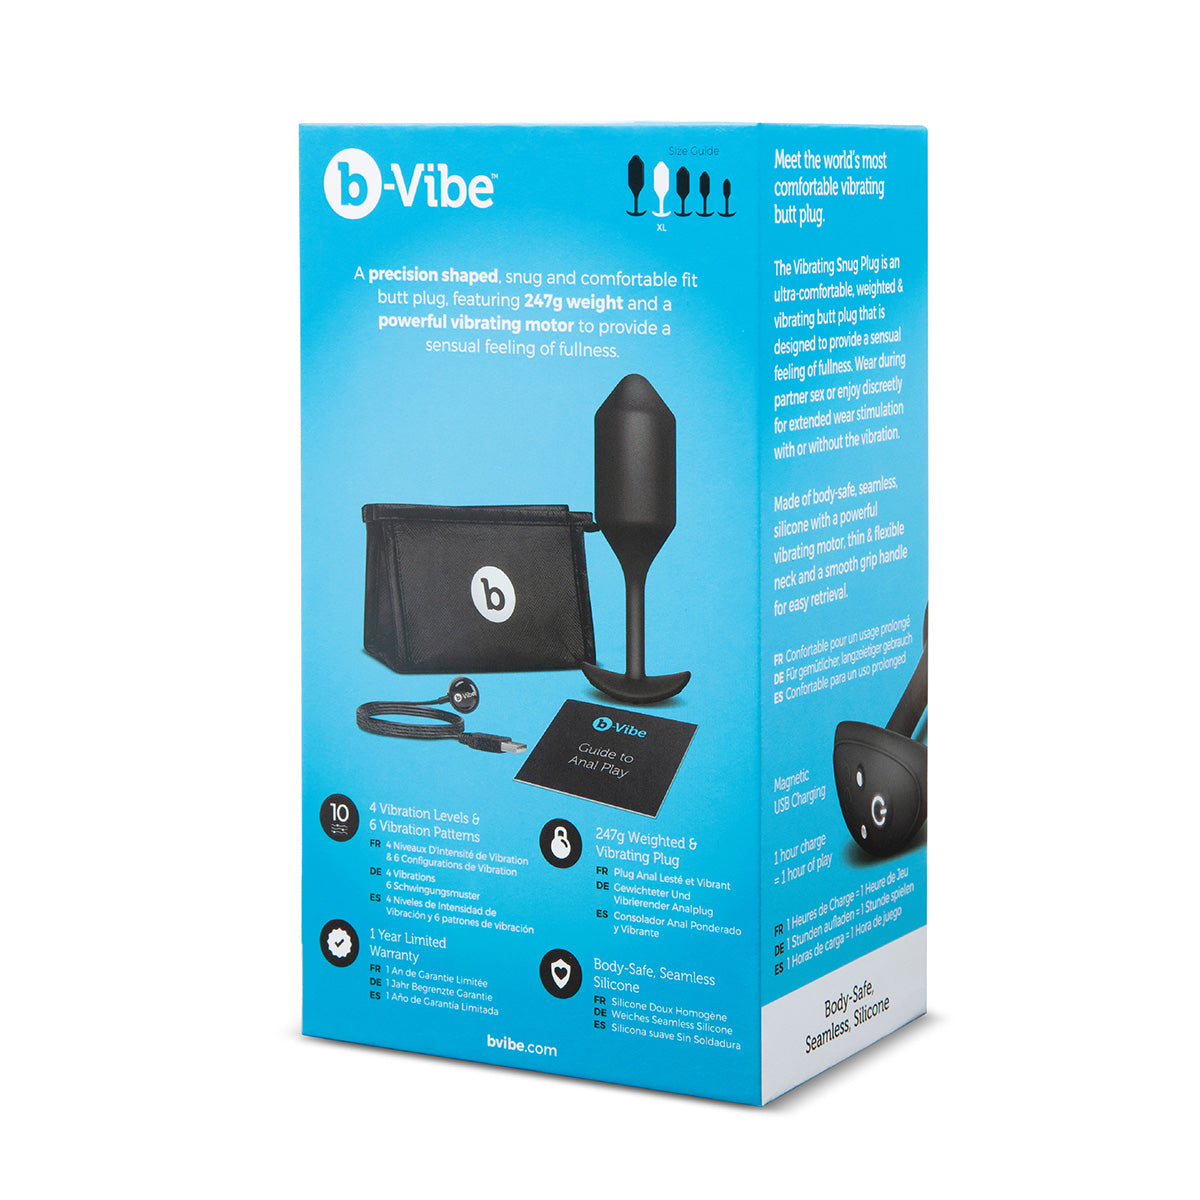 B-Vibe Vibrating Snug Plug 4 (XL) - Black